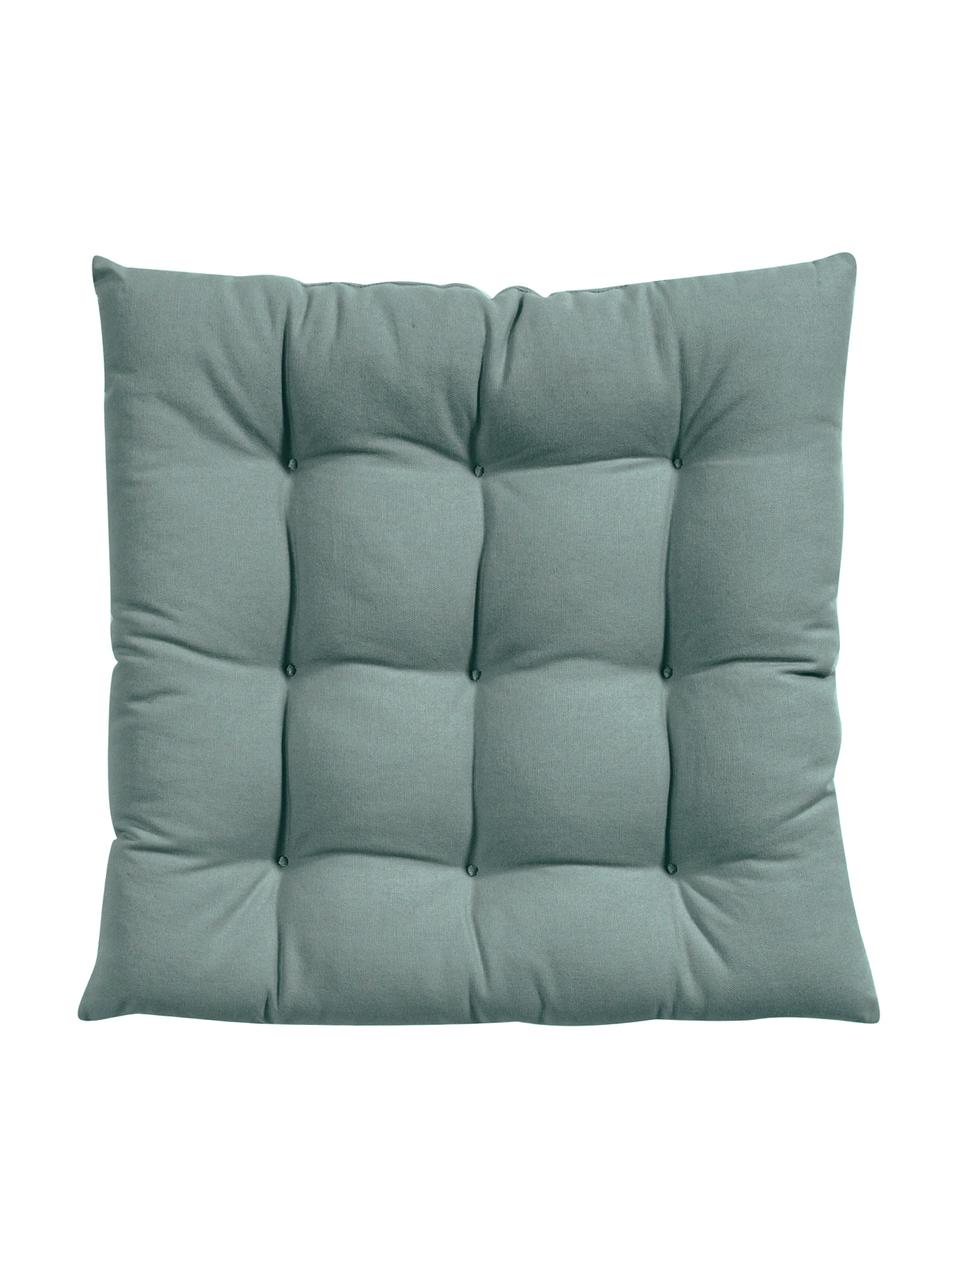 Poduszka na krzesło z bawełny Ava, Szałwiowy zielony, S 40 x D 40 cm